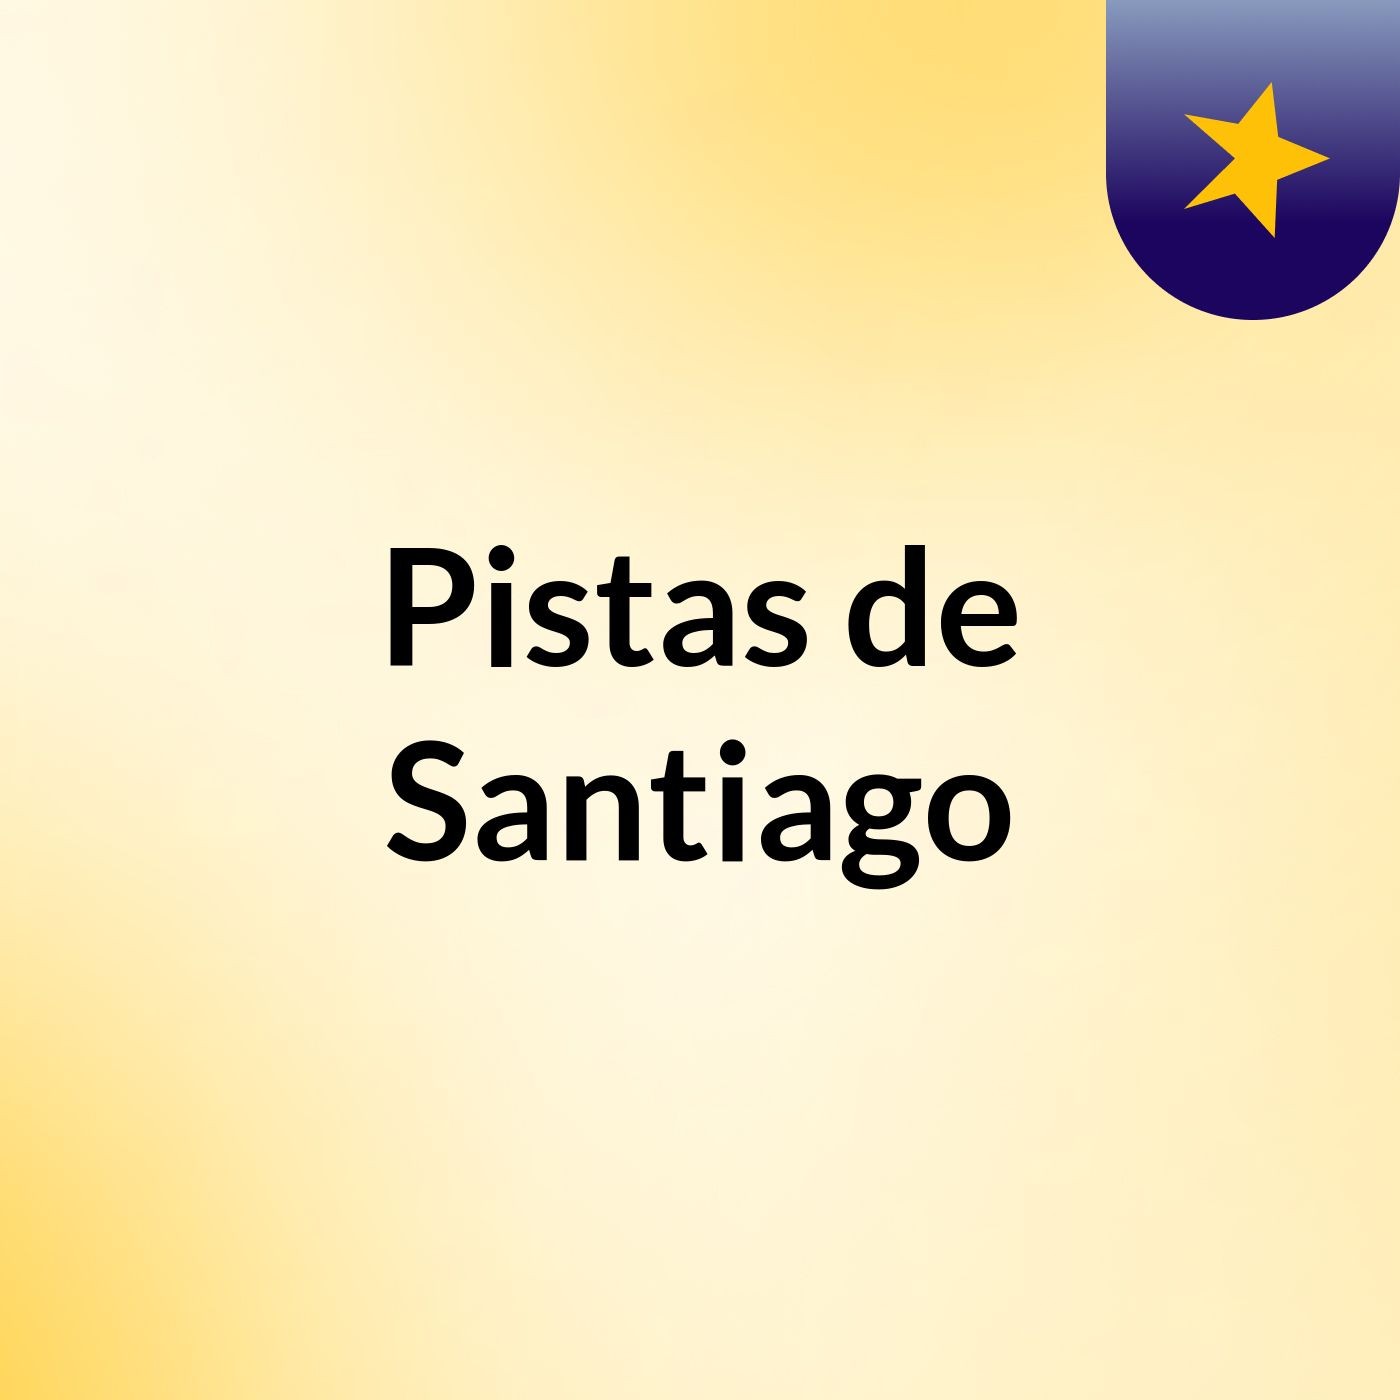 Pistas de Santiago